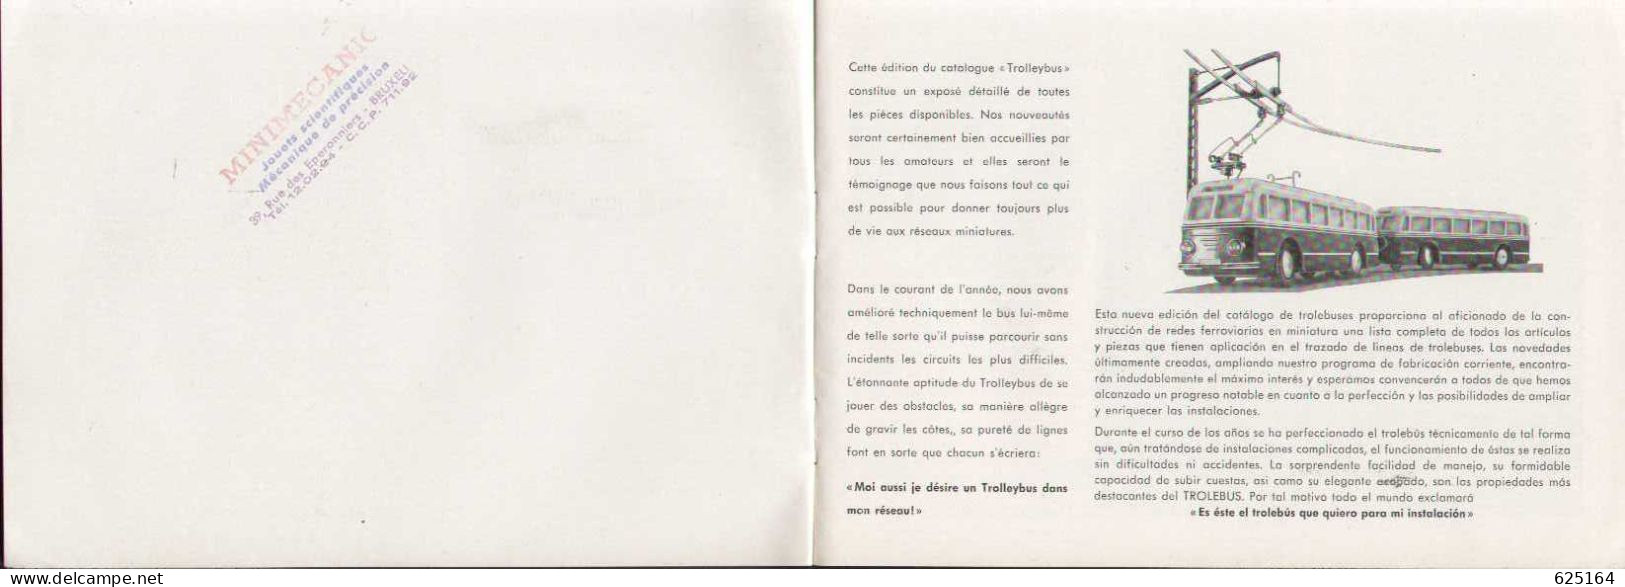 Catalogue EHEIM TROLLEY-BUS 1954  HO 1:87 - Französische Ausgabe - Französisch